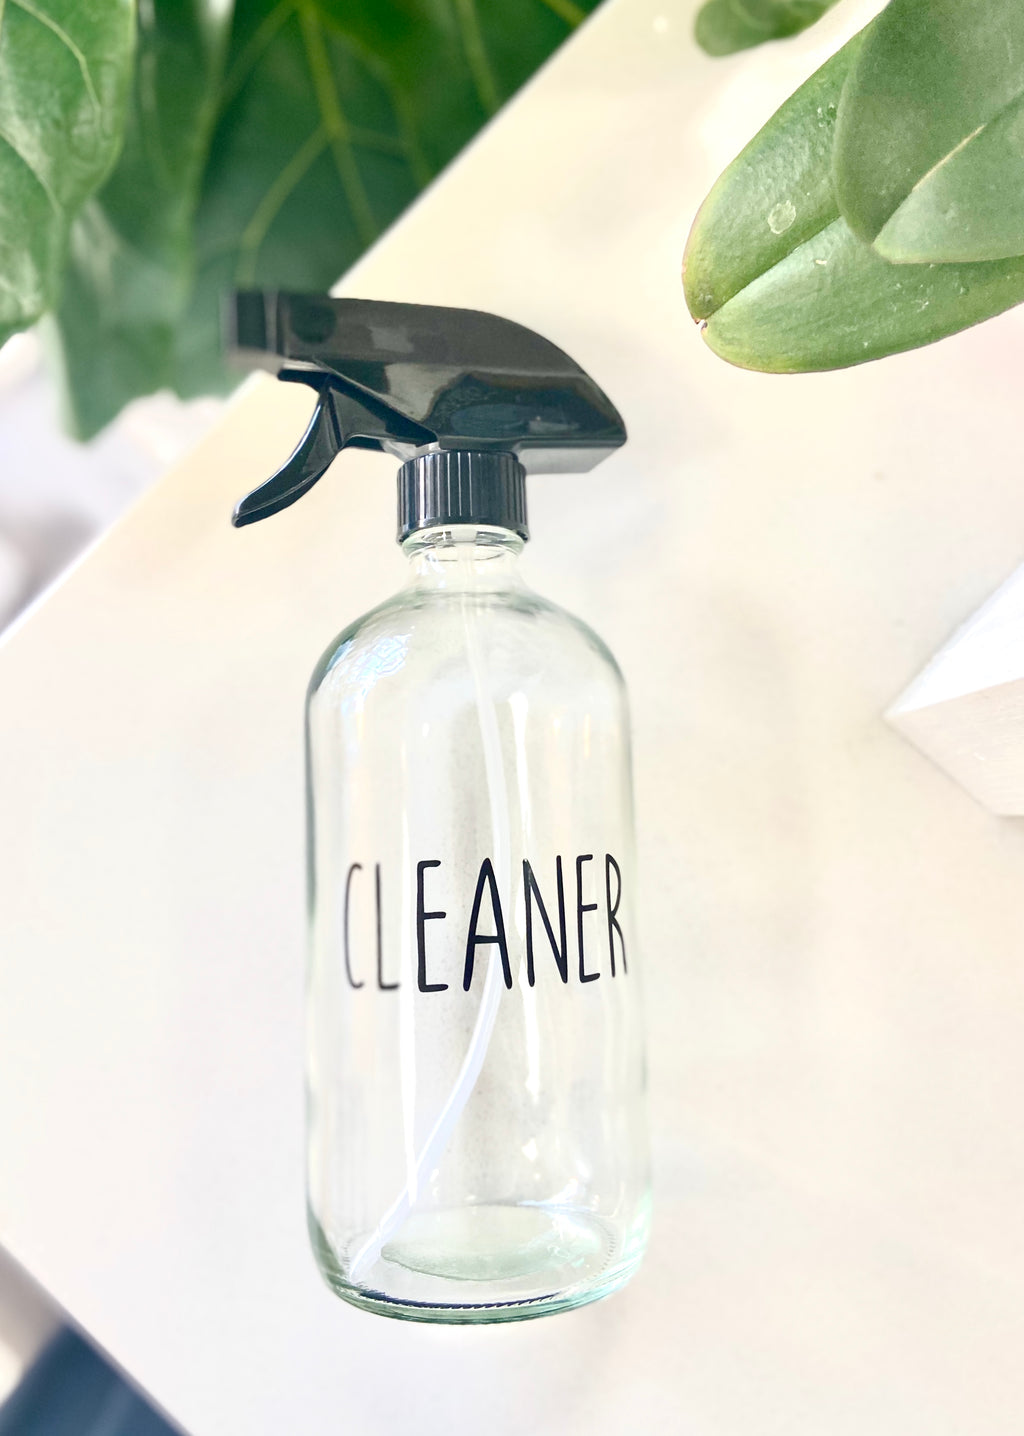 Labelled Bottle- Cleaner